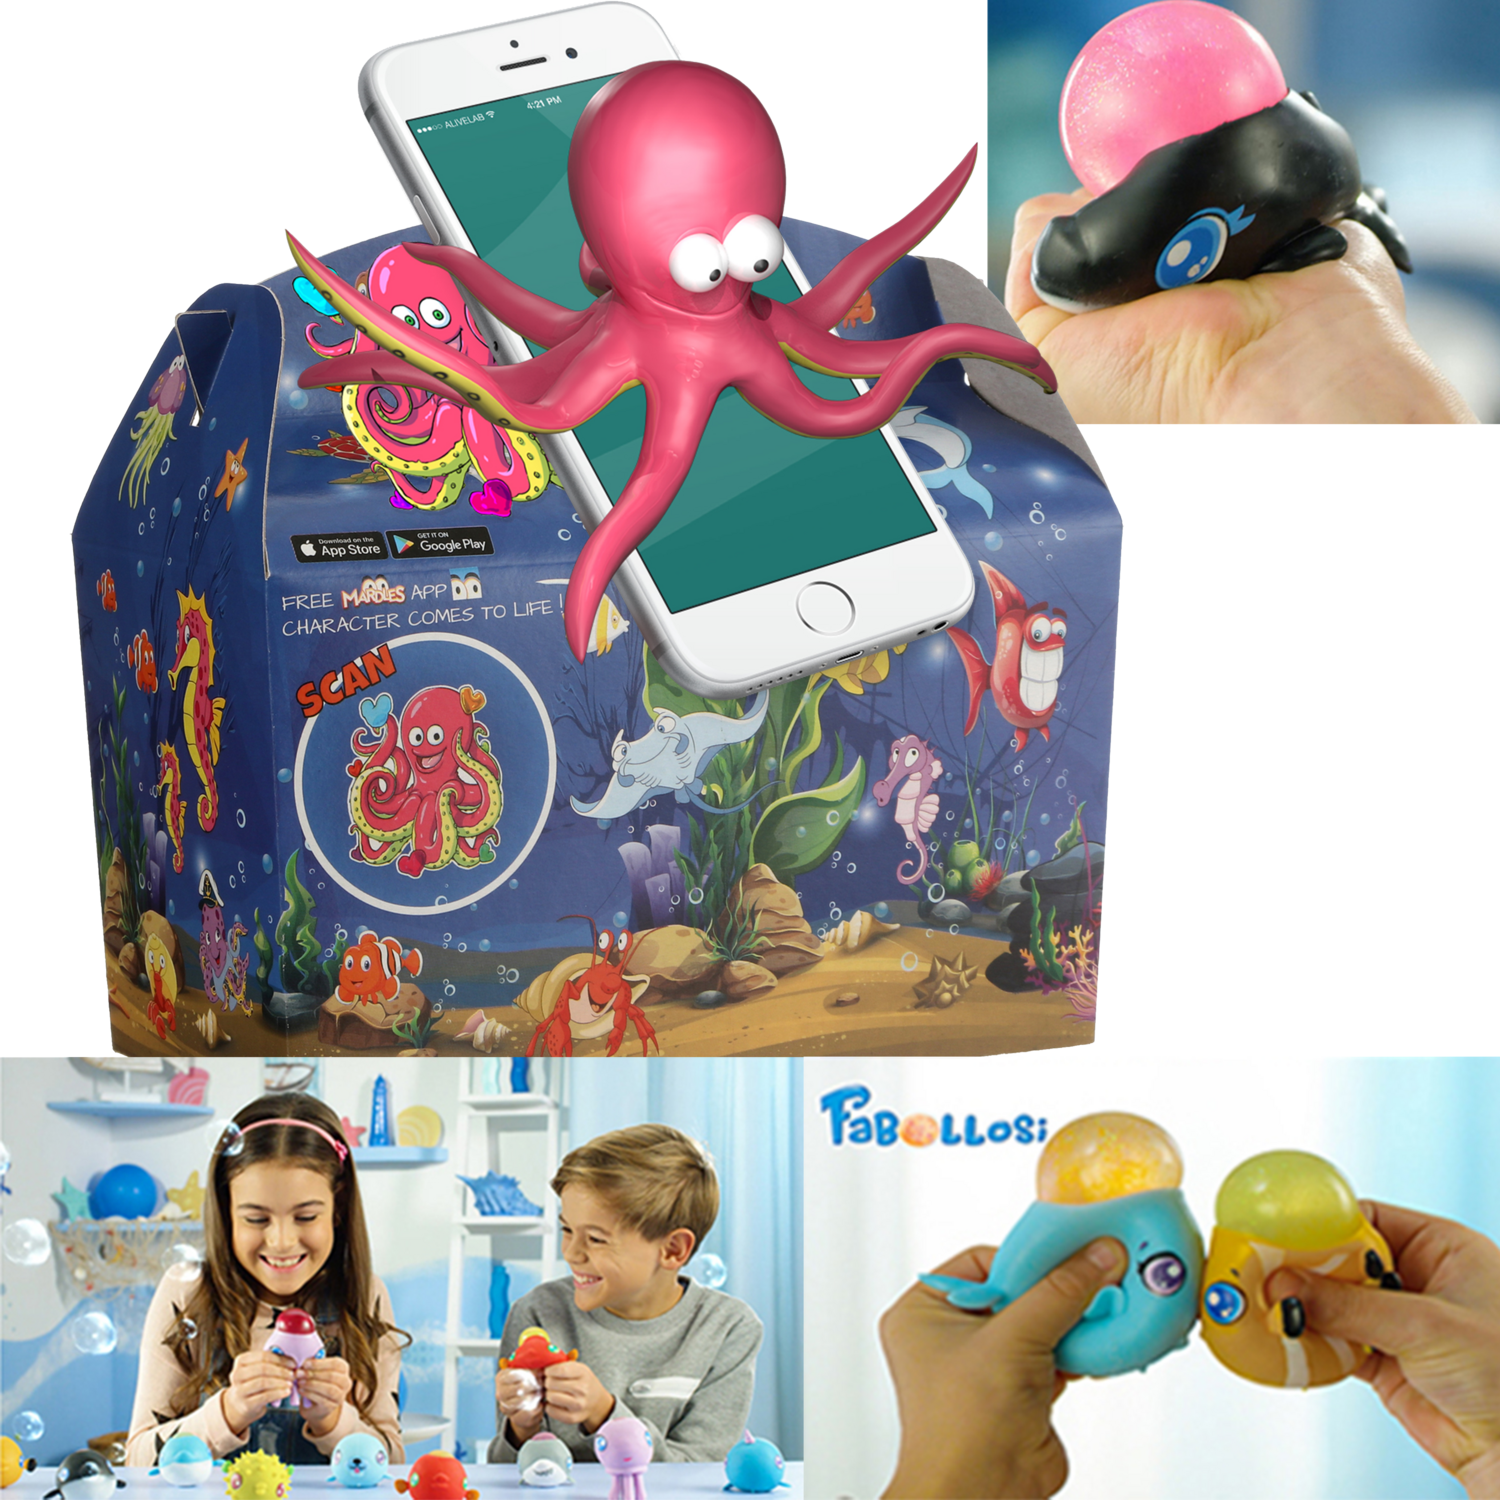  Kidsbox, Cardboard, Ocean, met fabollosi-knijpvissen, 150x214x115mm 1